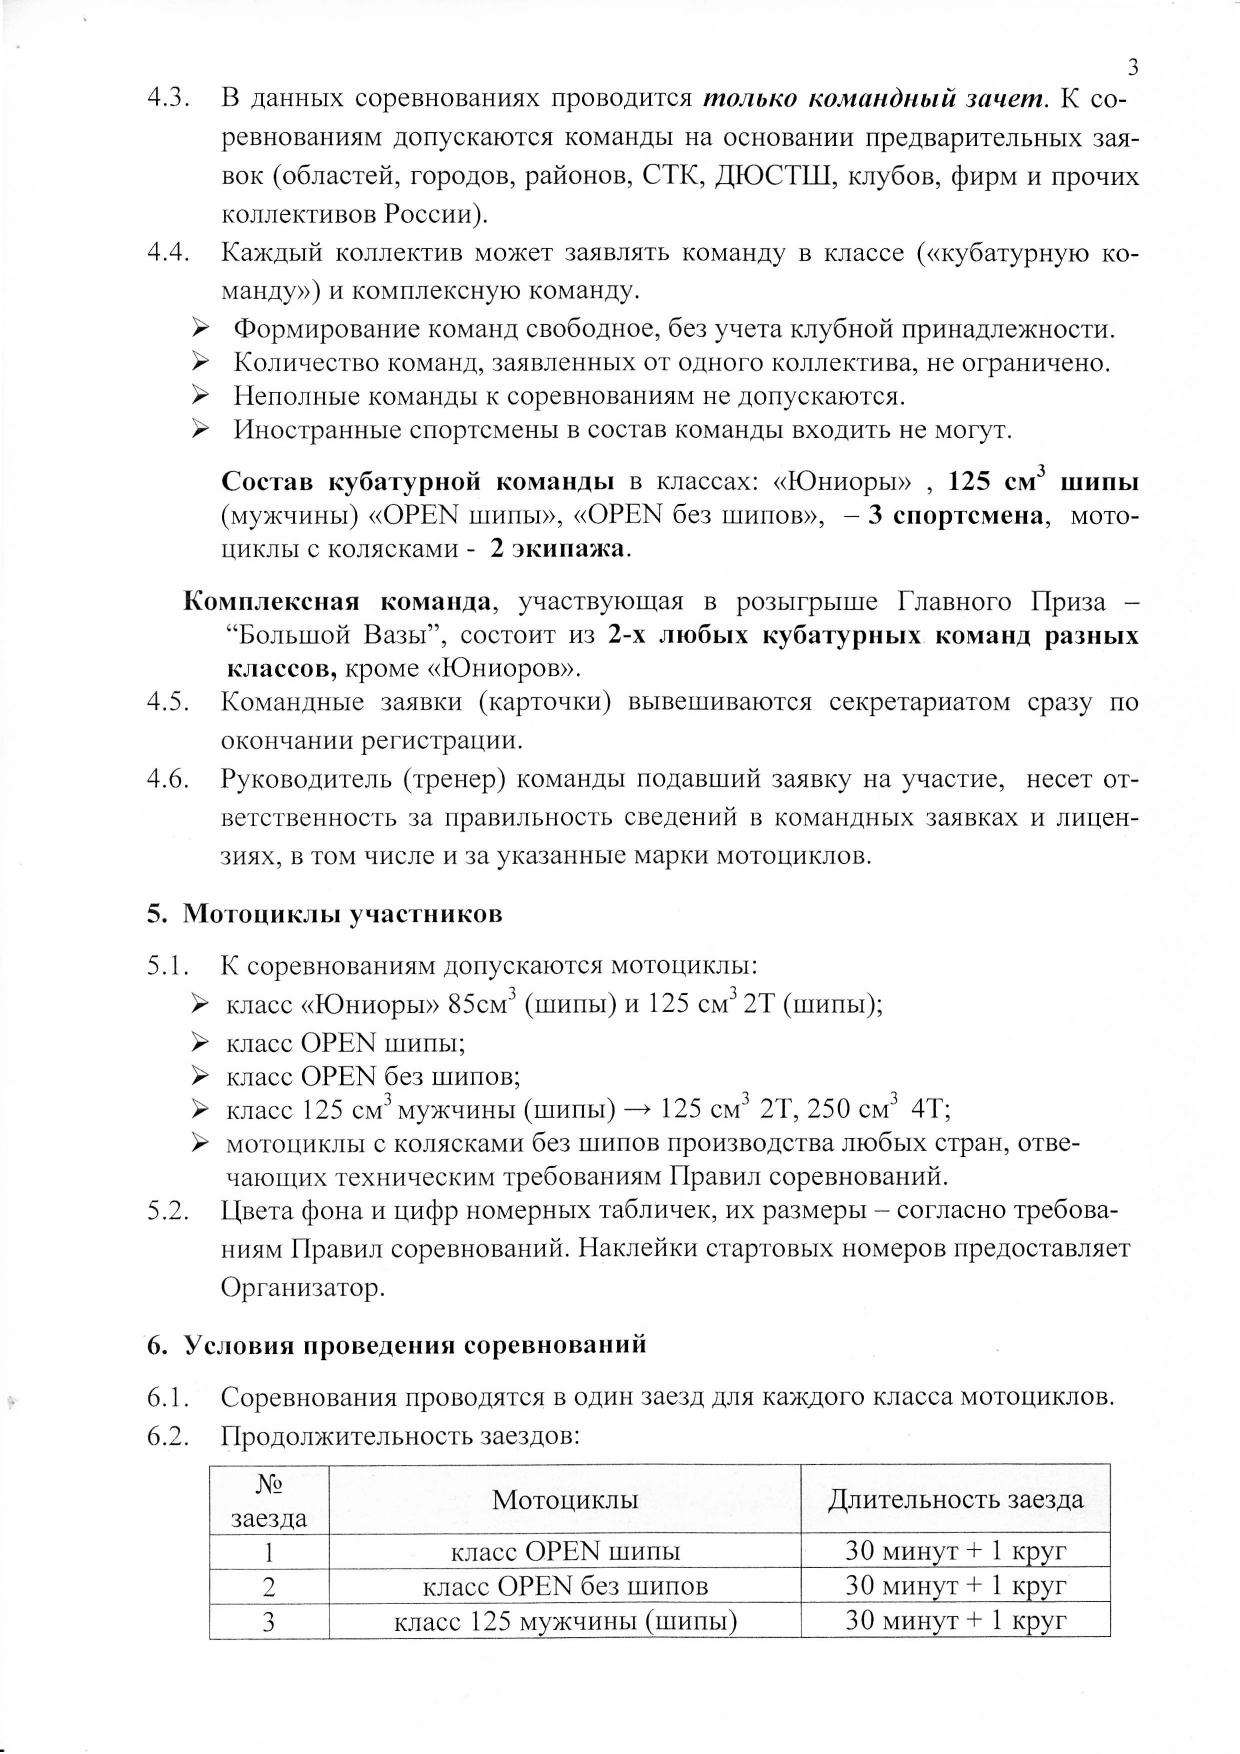 Чкаловский мотокросс 2017  регламент